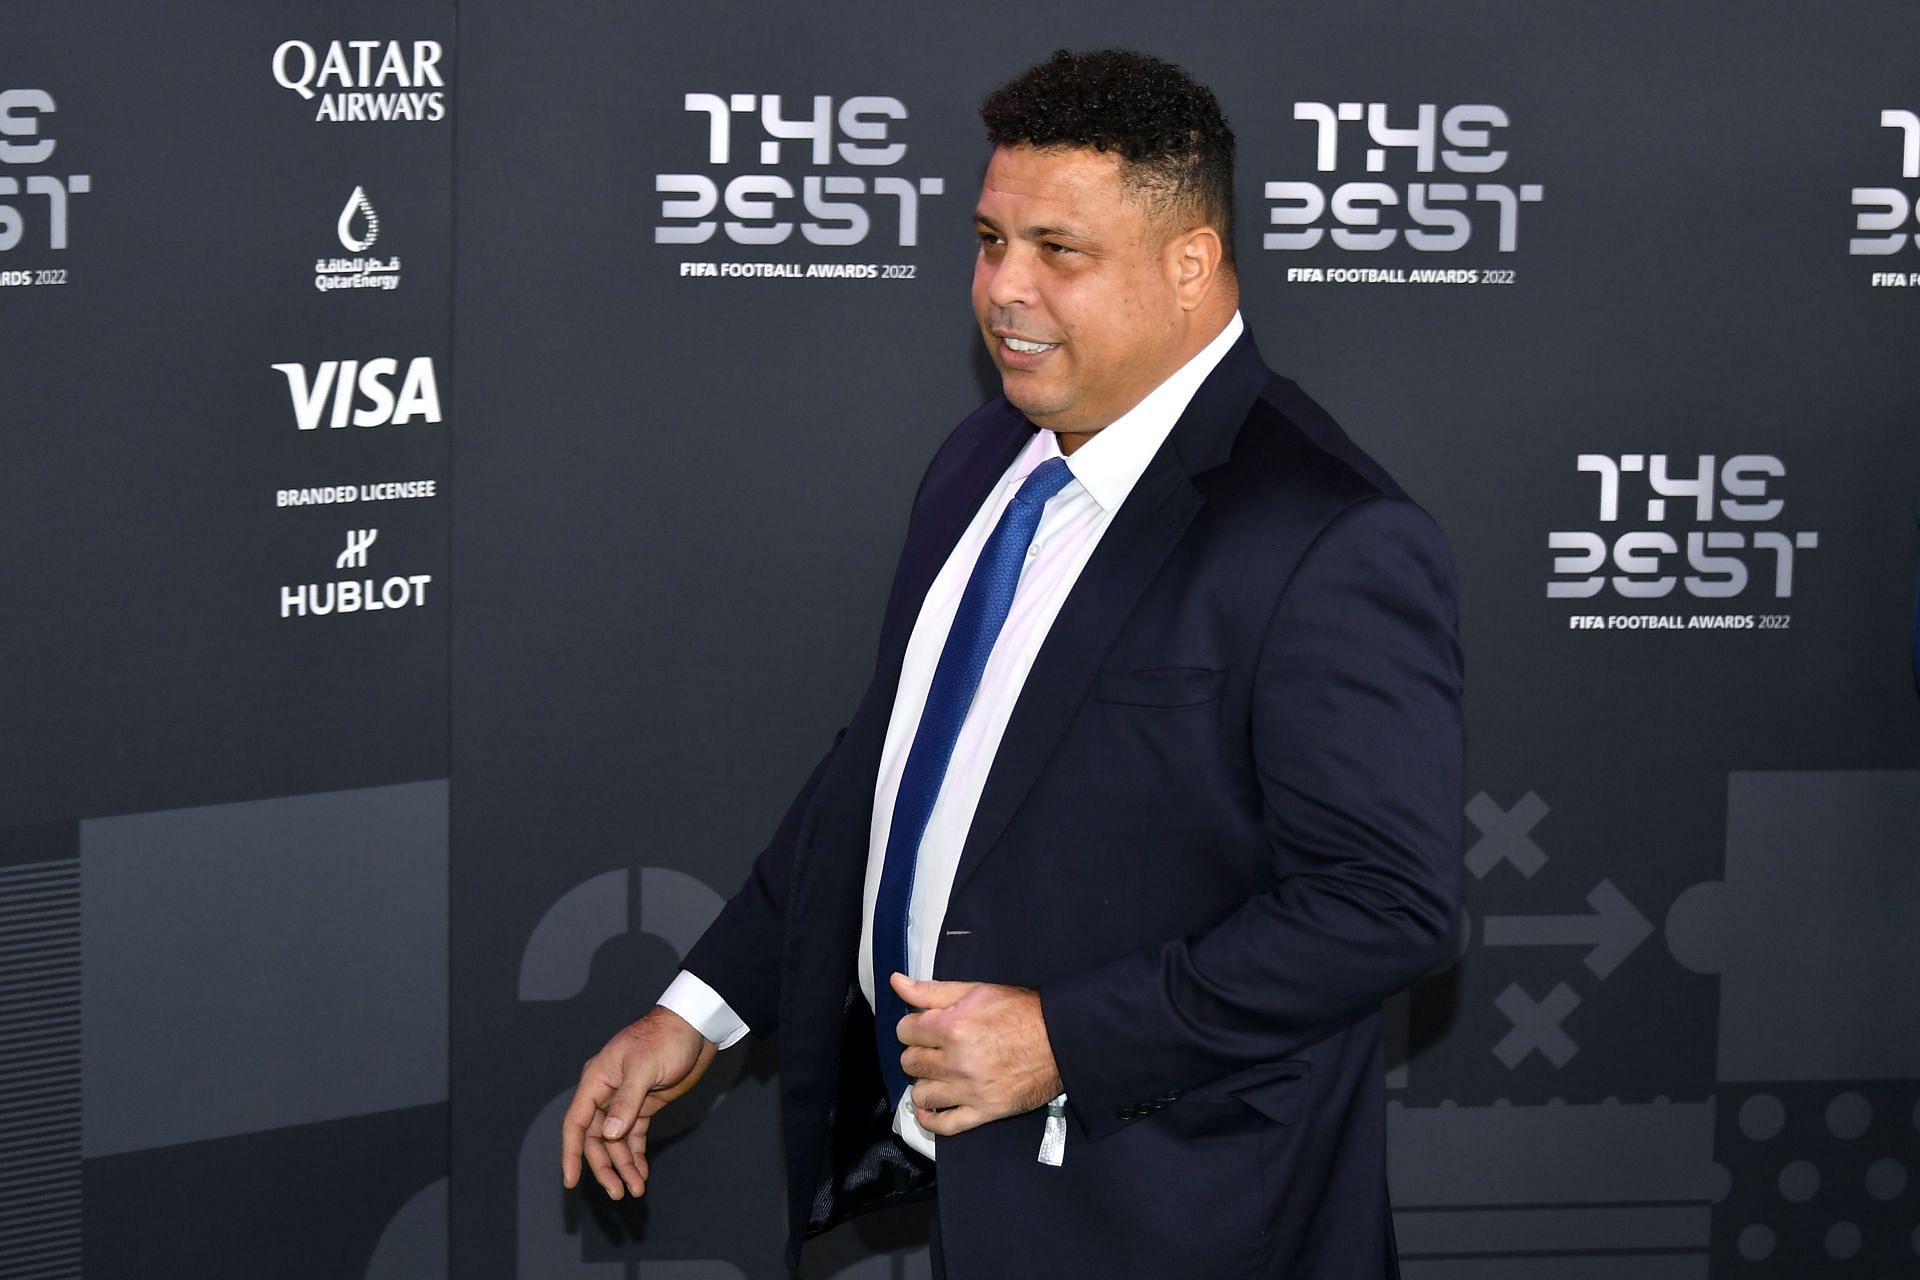 Ronaldo Nazario at The Best FIFA Football Awards 2022